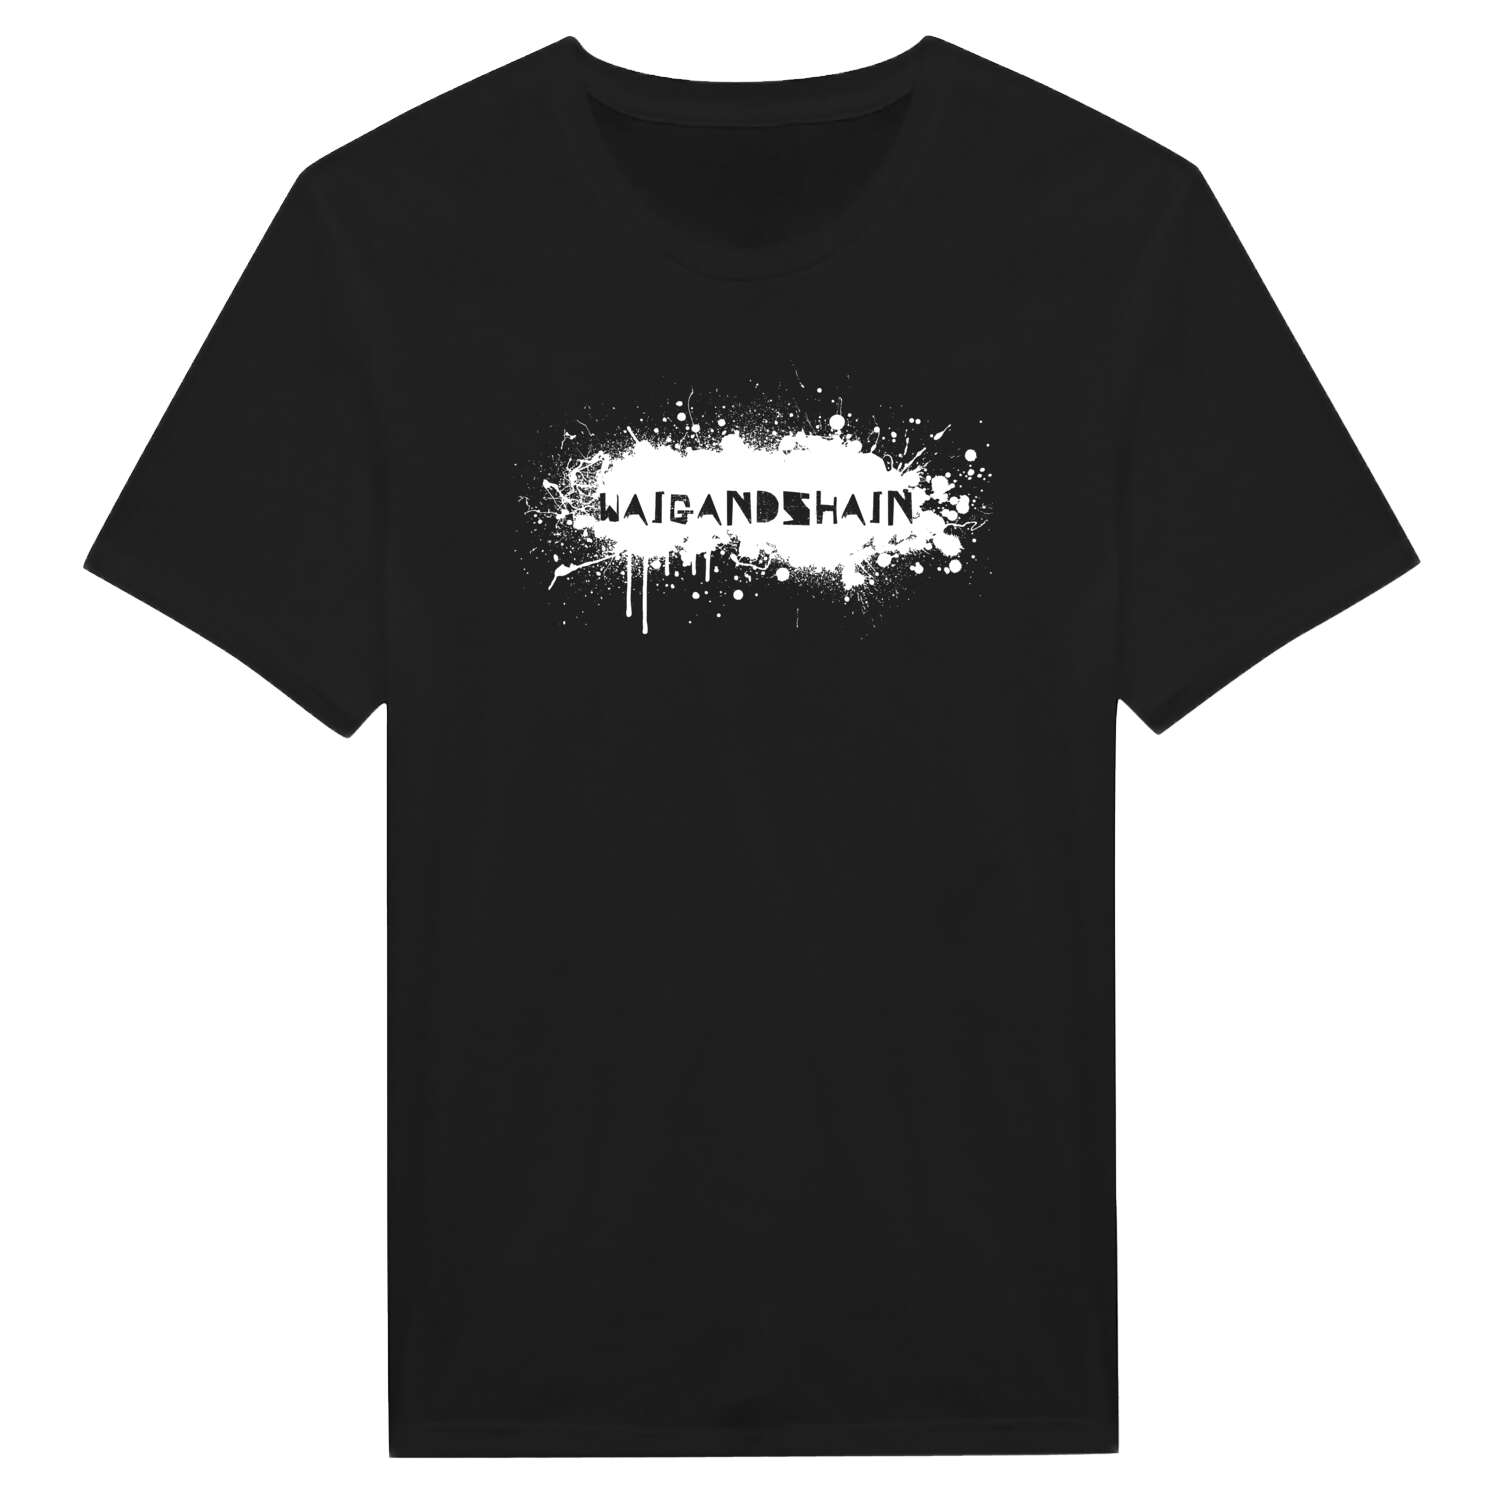 Waigandshain T-Shirt »Paint Splash Punk«